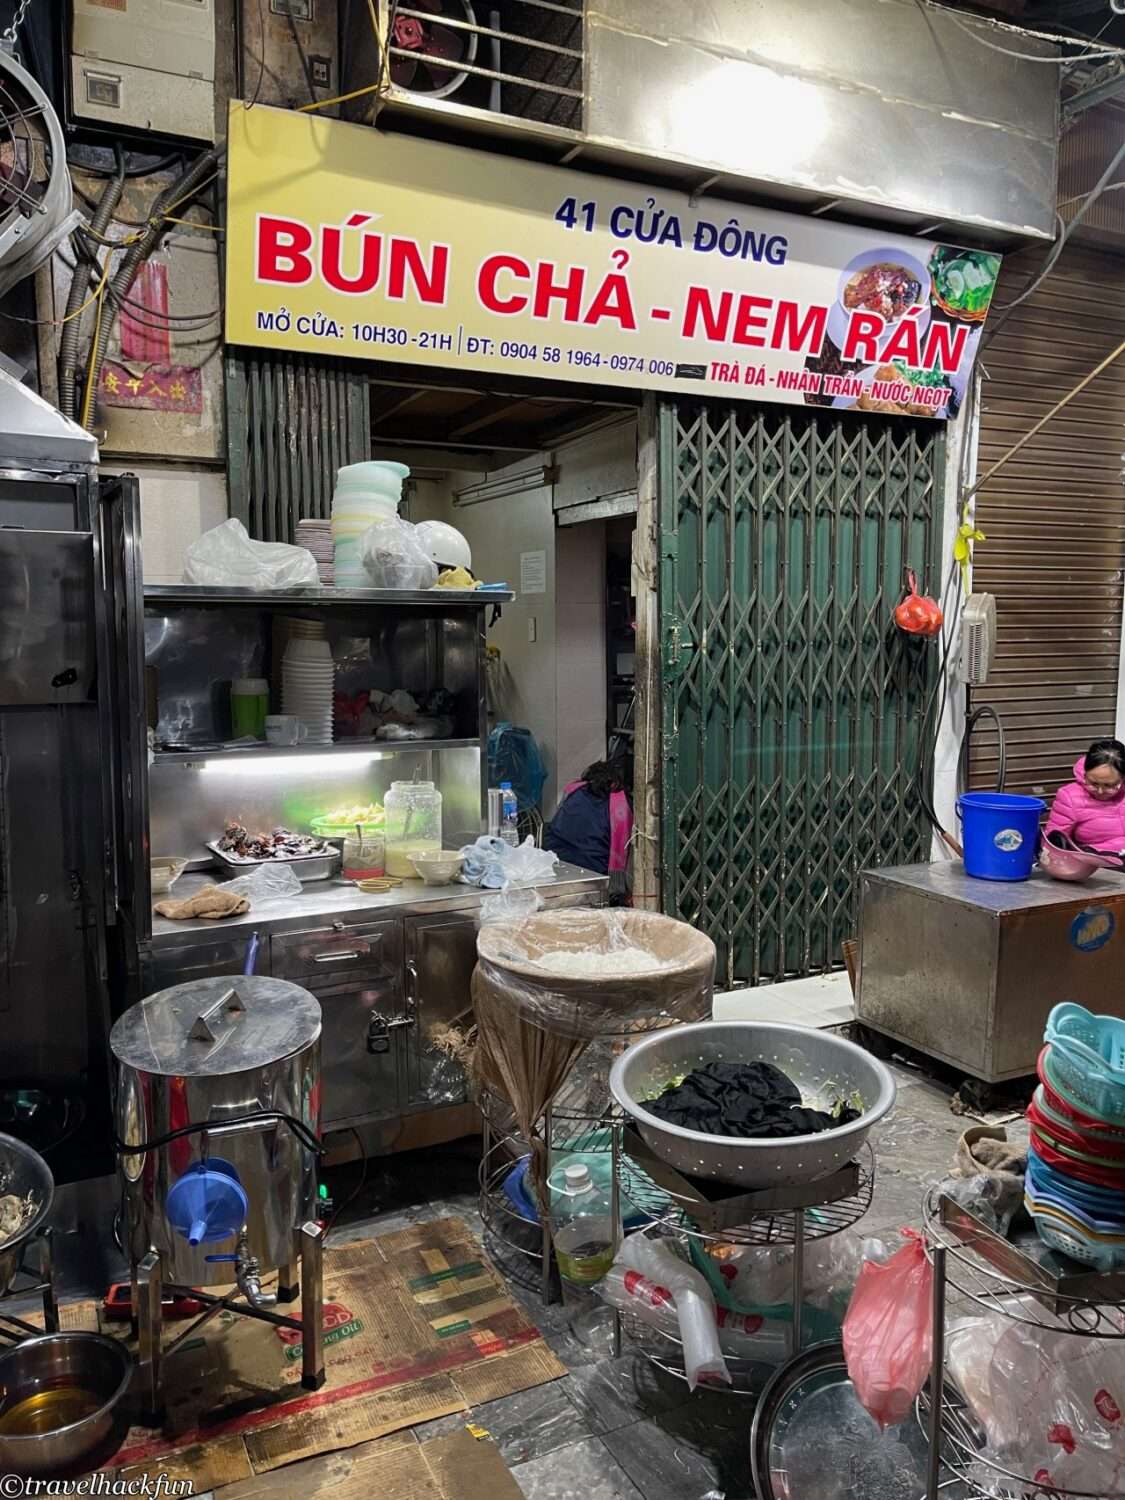 河內美食,Hanoi food 17